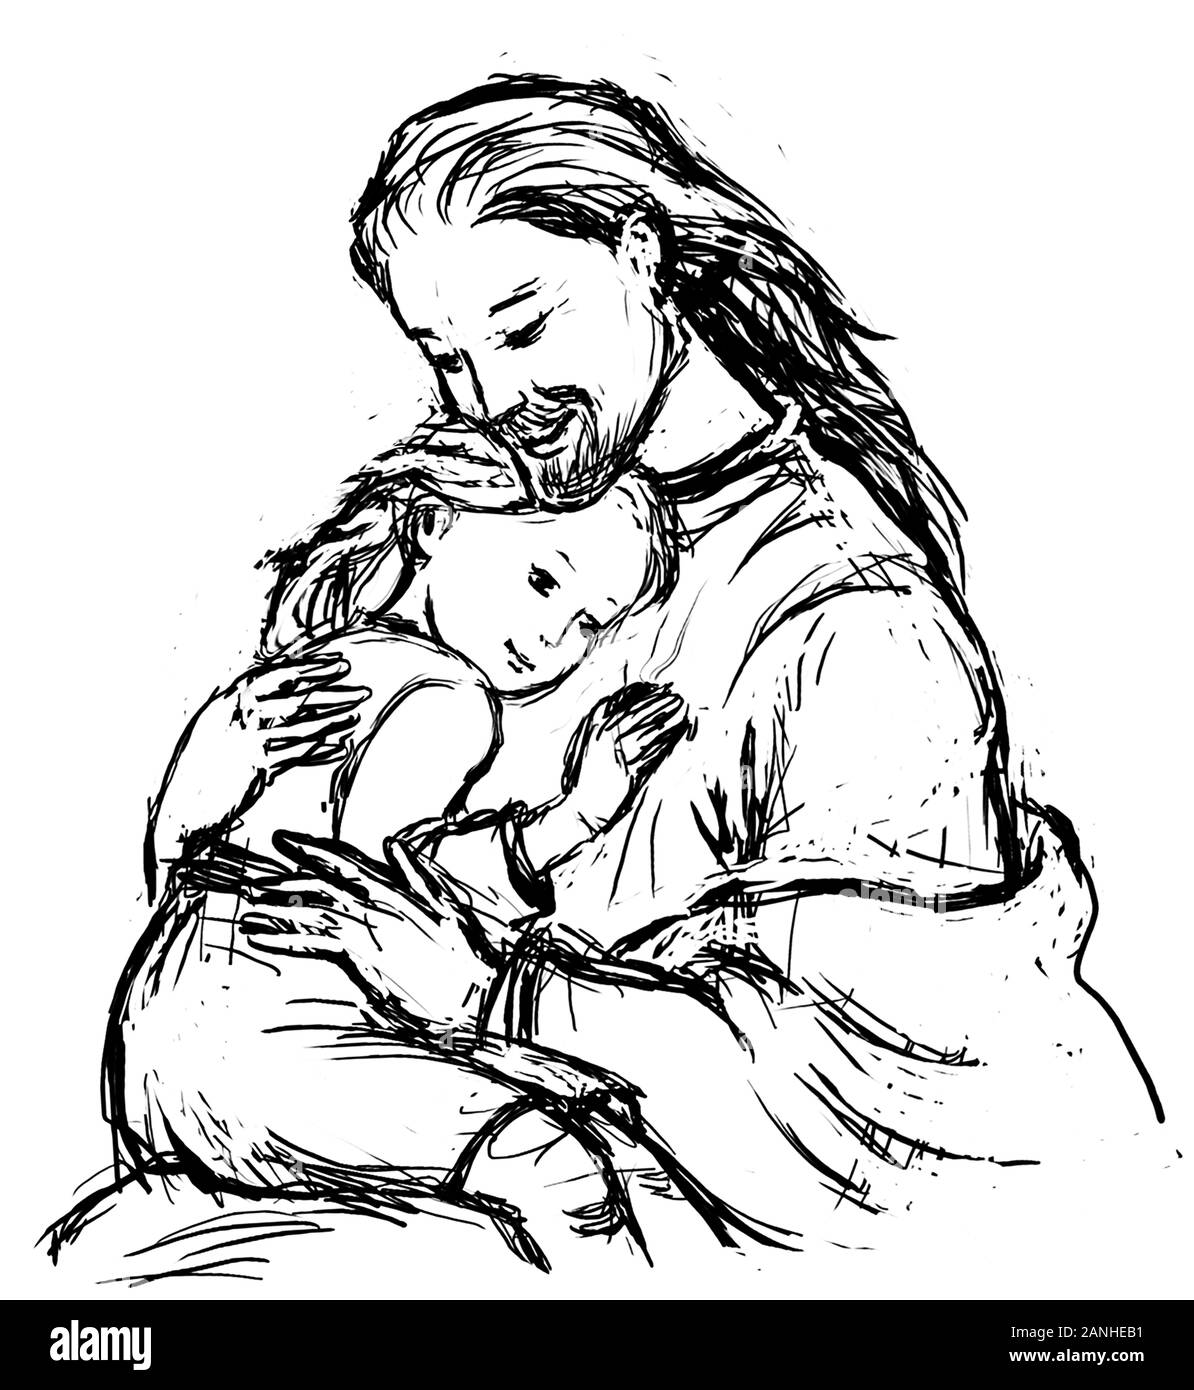 Jésus Embrassant Le Jeune Enfant. Illustration ou esquisse de dessin au stylet et à l'encre Banque D'Images